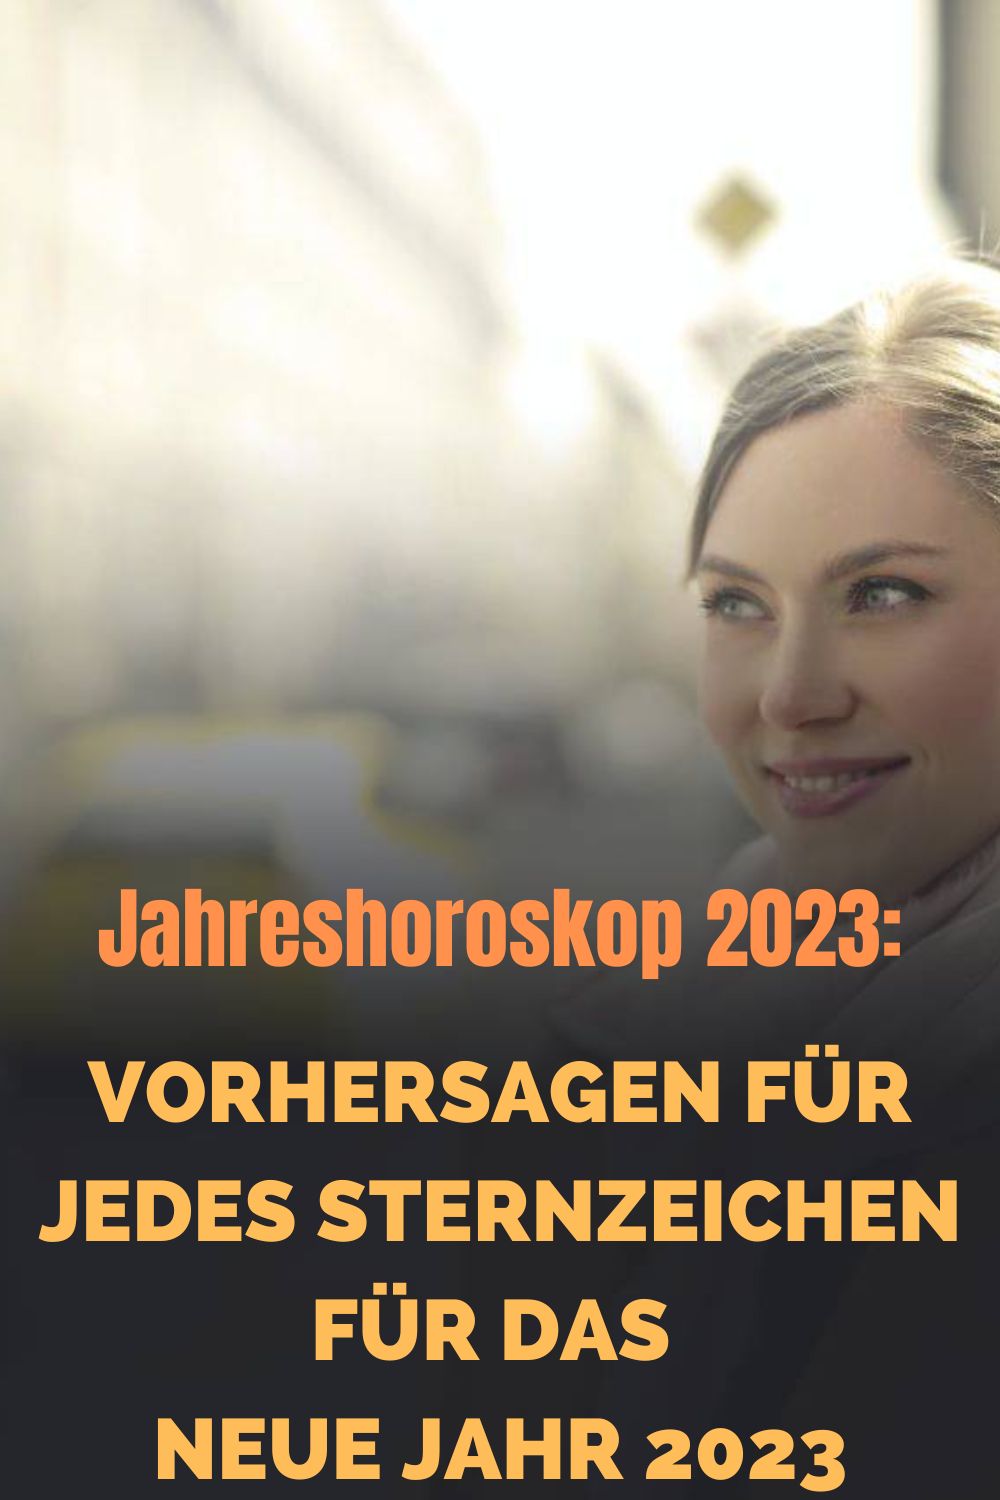 Jahreshoroskop-2023-Vorhersagen-fuer-jedes-Sternzeichen-fuer-das-neue-Jahr-2023